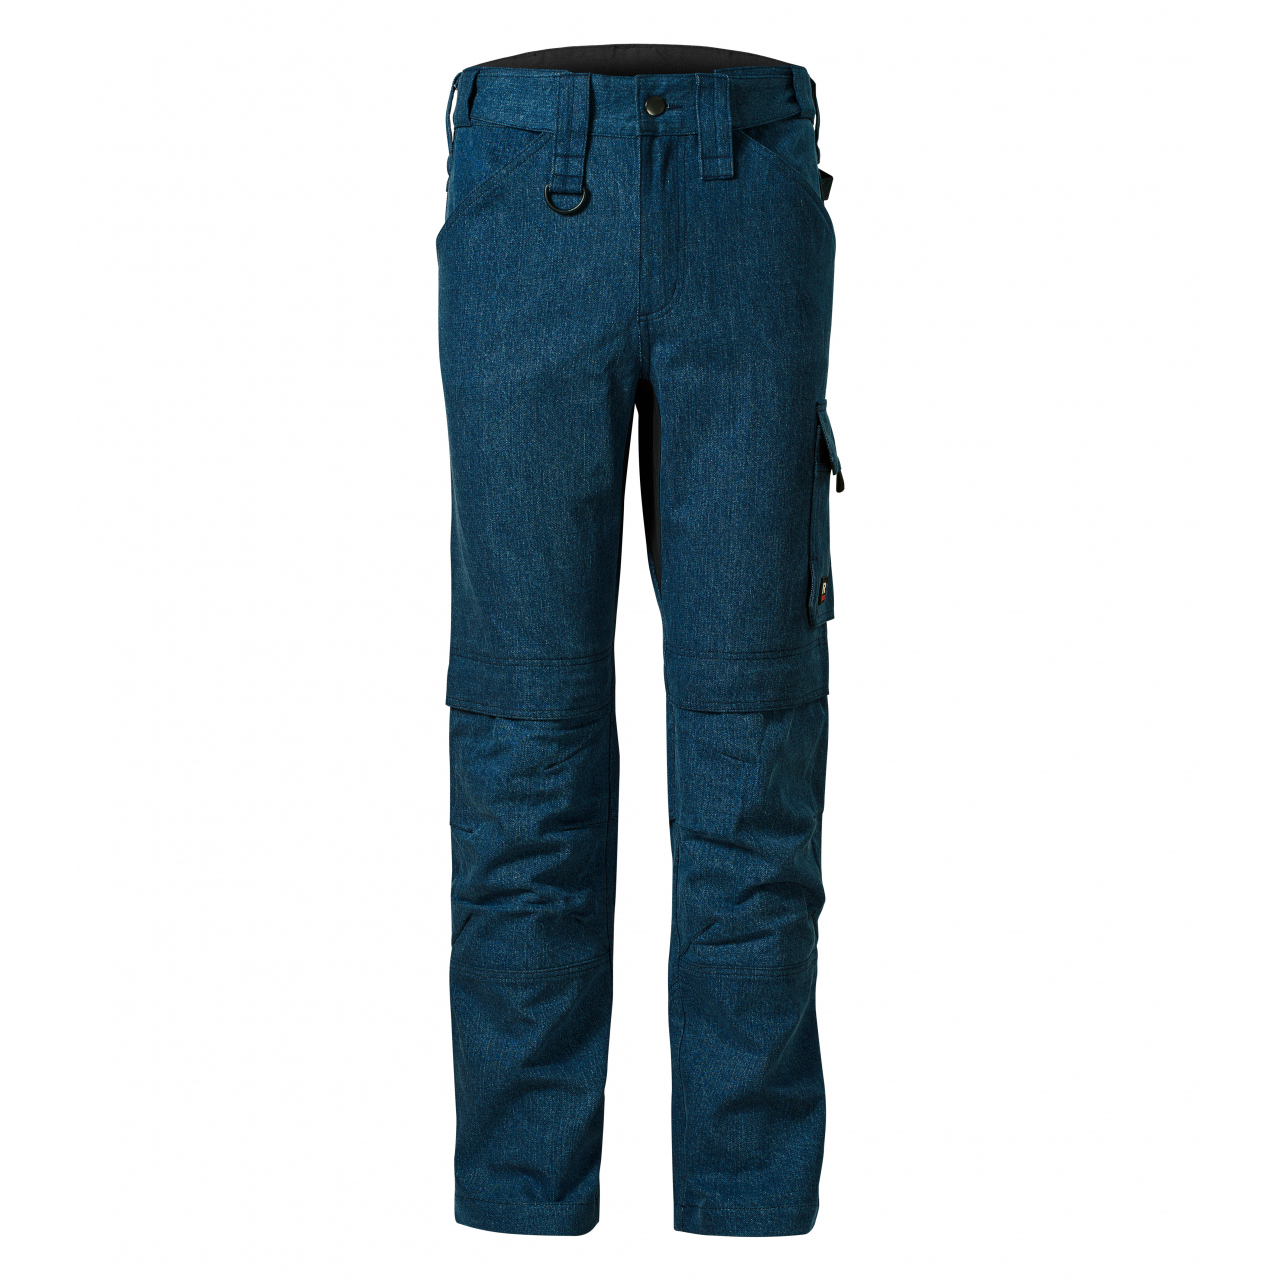 Pracovní džíny pánské Rimeck Vertex - tmavě modré, 48